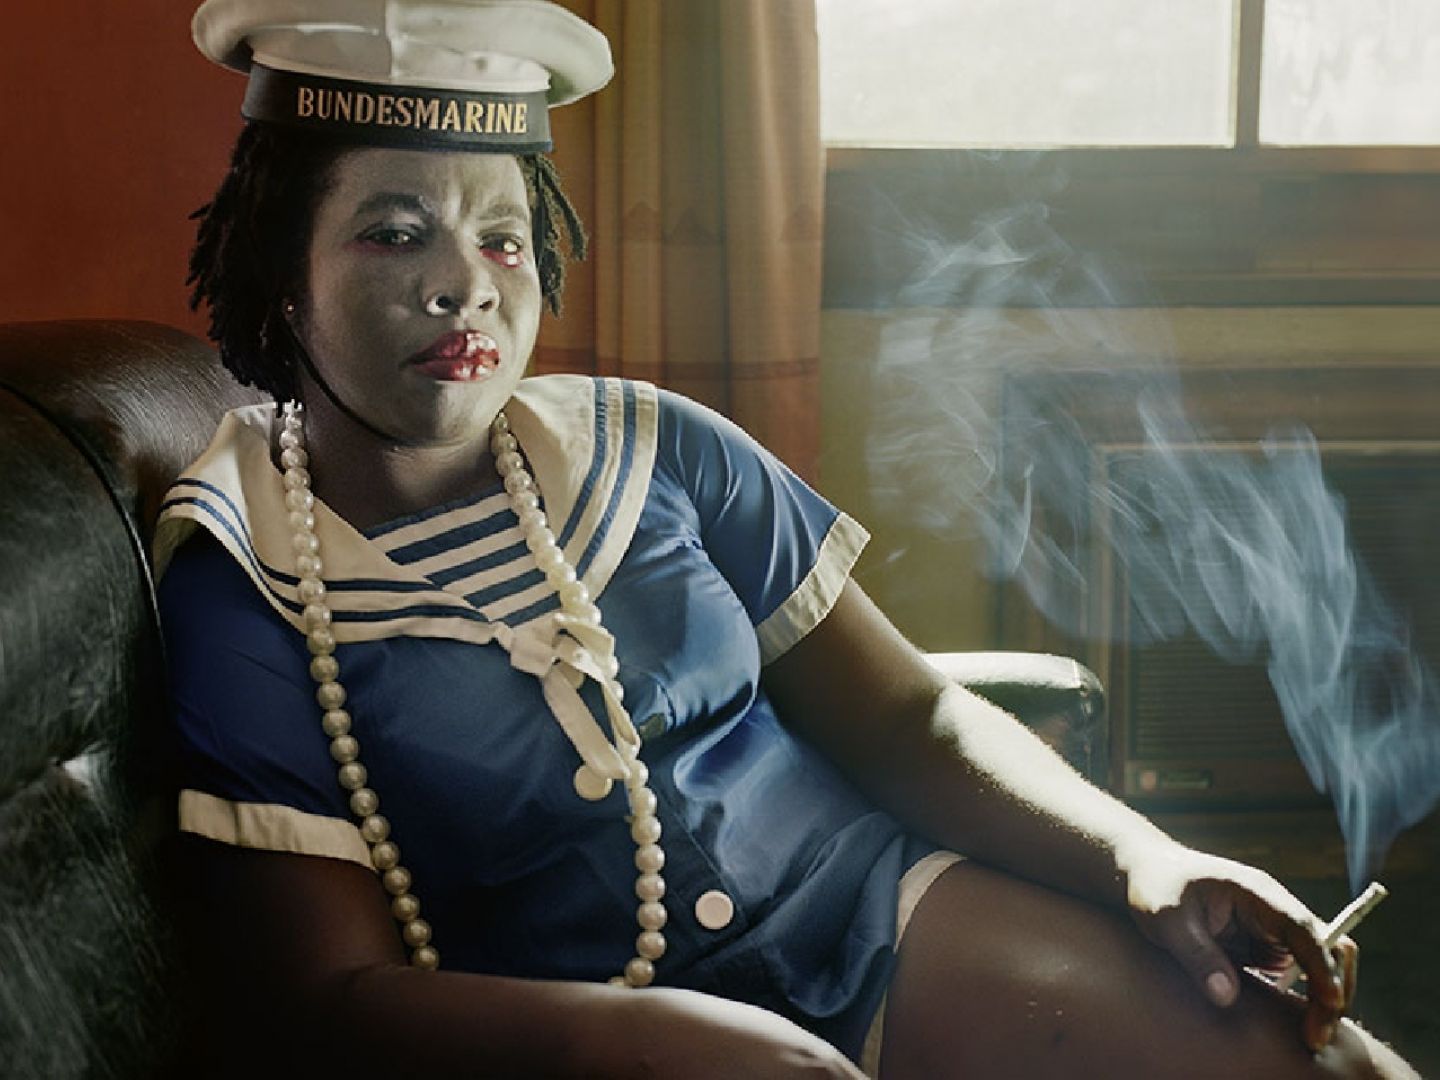 Plakatmotiv von Die Dreigroschenoper. Auf dem Bild sitzt eine Frau in Matrosen-Uniform mit rauchender Zigarette in der Hand.